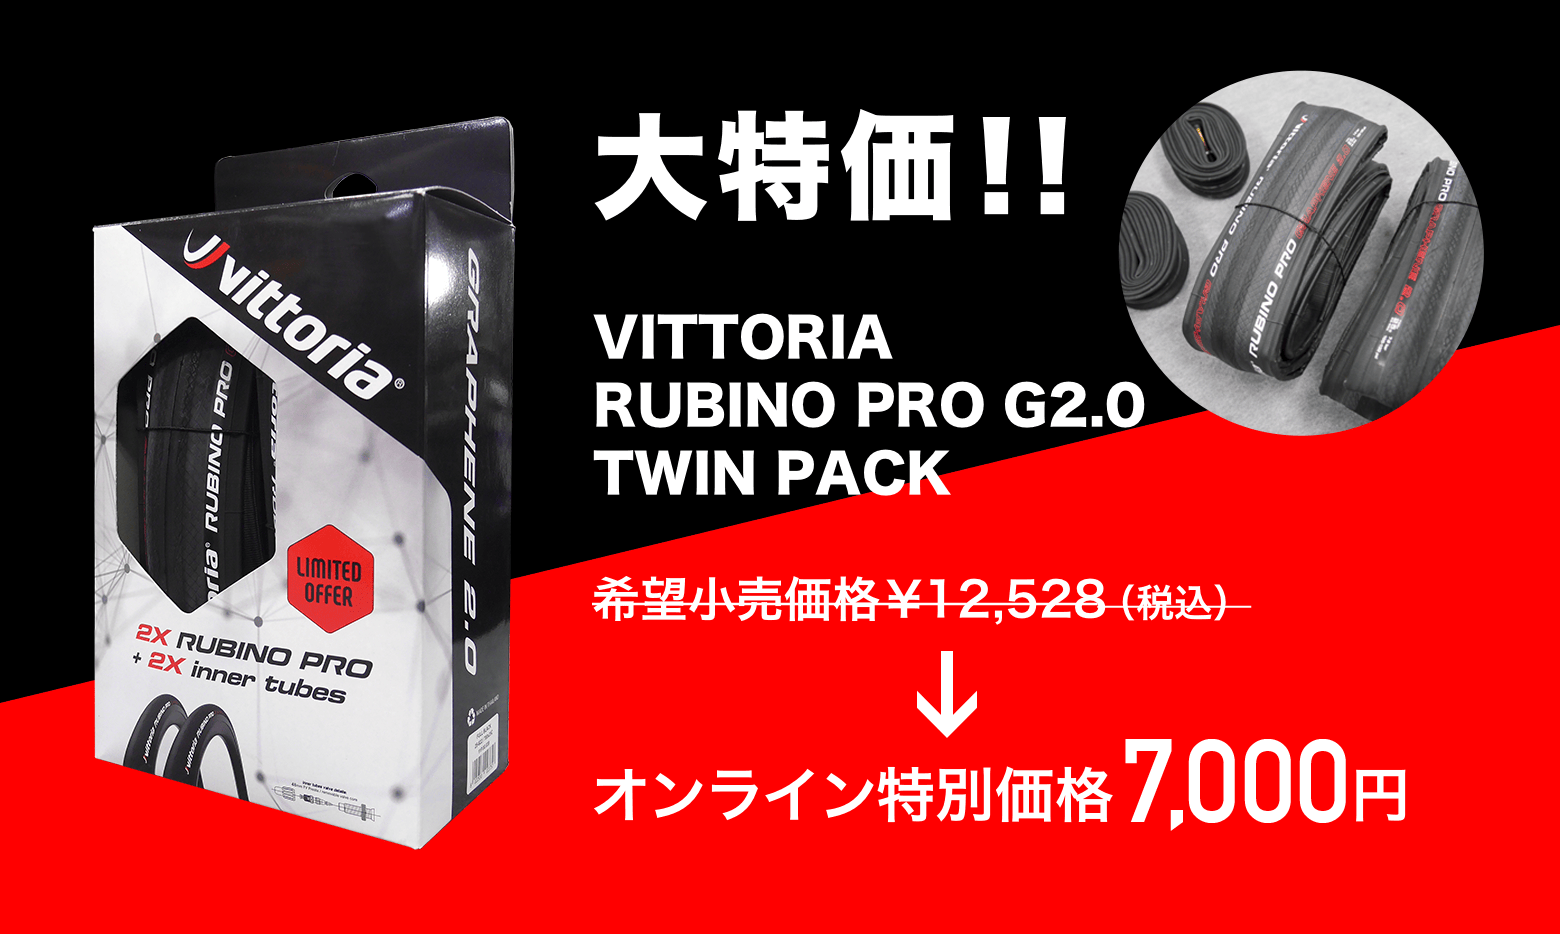 !! VITTORIA RUBINO PRO G2.0 TWIN PACK ICʉi 7,000~